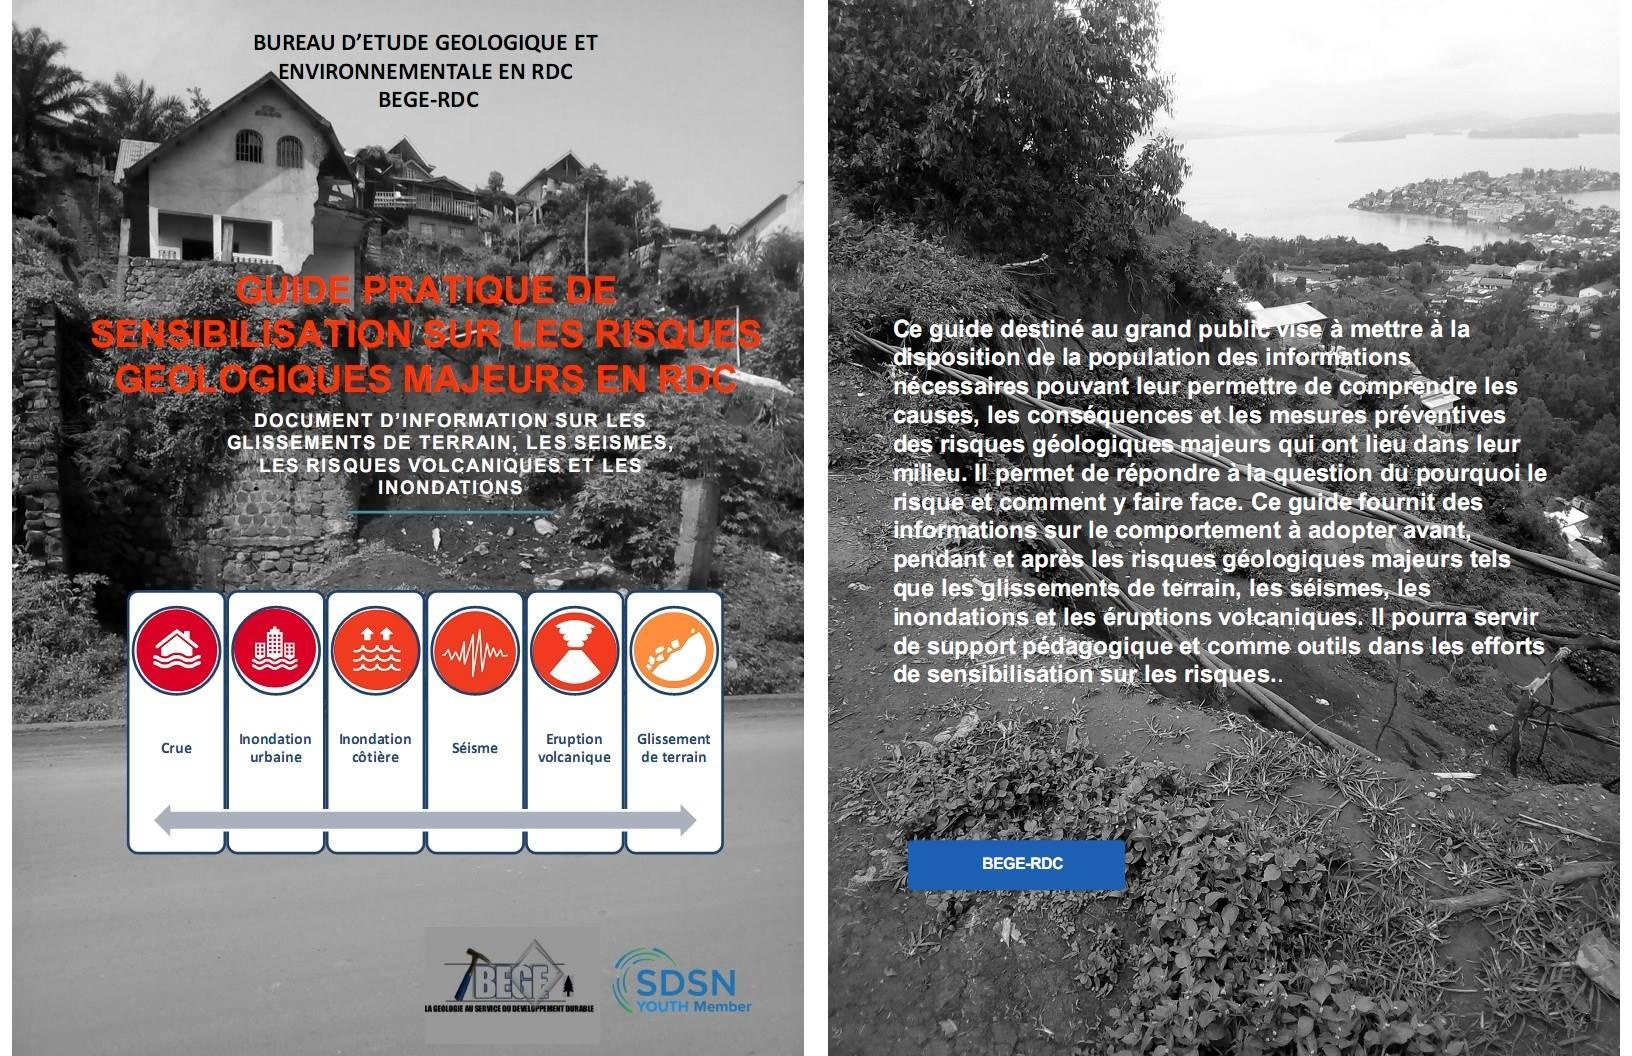 Guide pratique de sensibilisation sur les risques géologiques majeurs en RDC